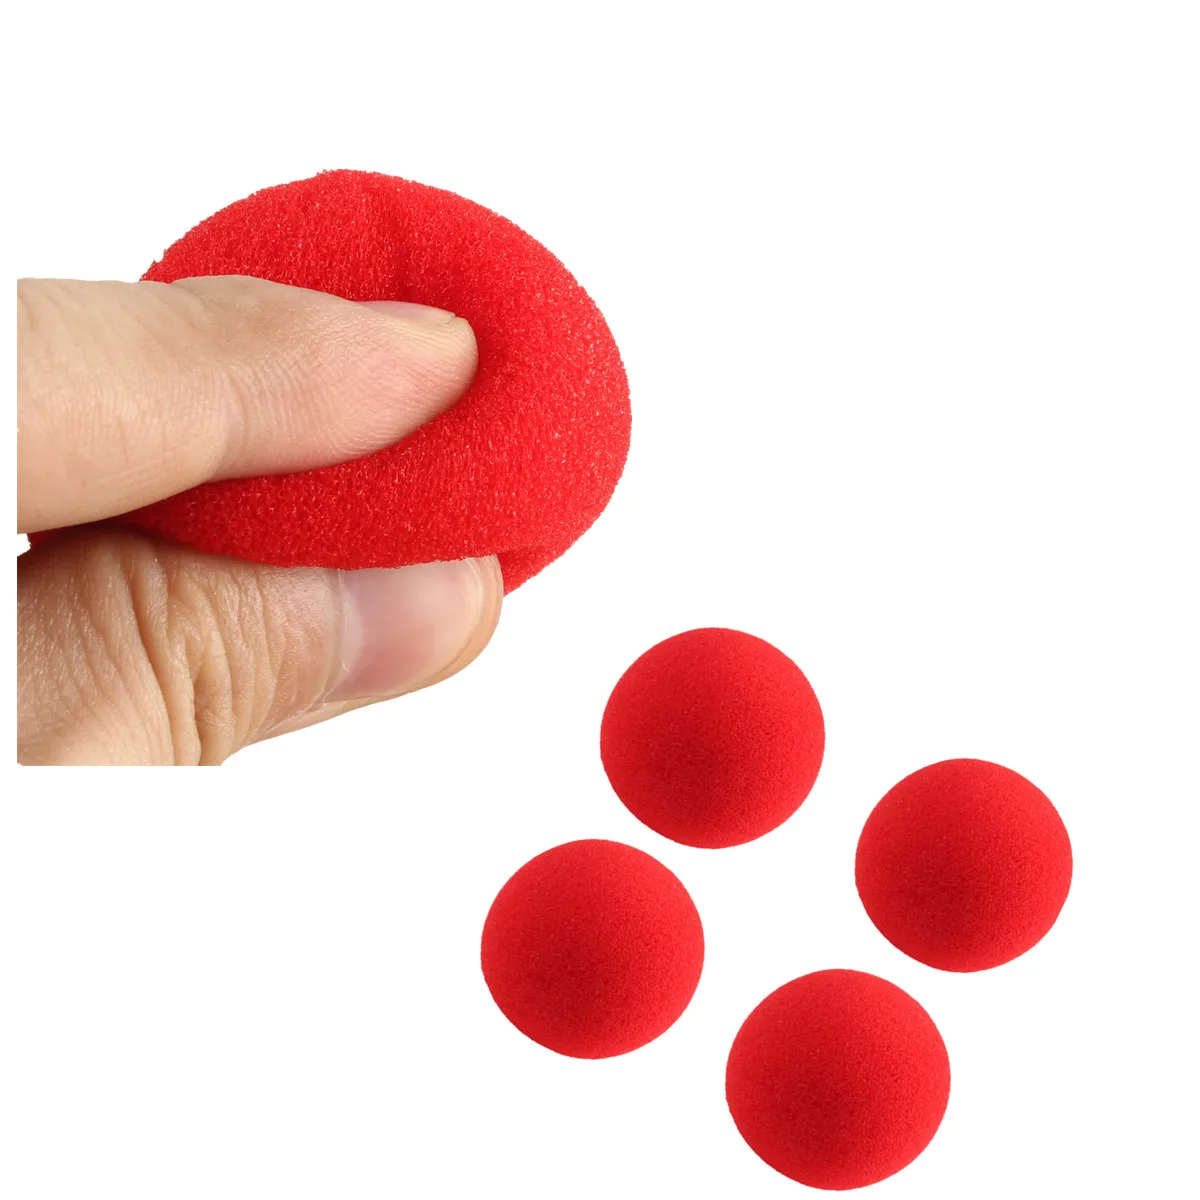 4,5 см большой губки 5/10/30 штук Красный Губка шары смешной реквизит магический реквизит клоунский нос фокусы игрушки